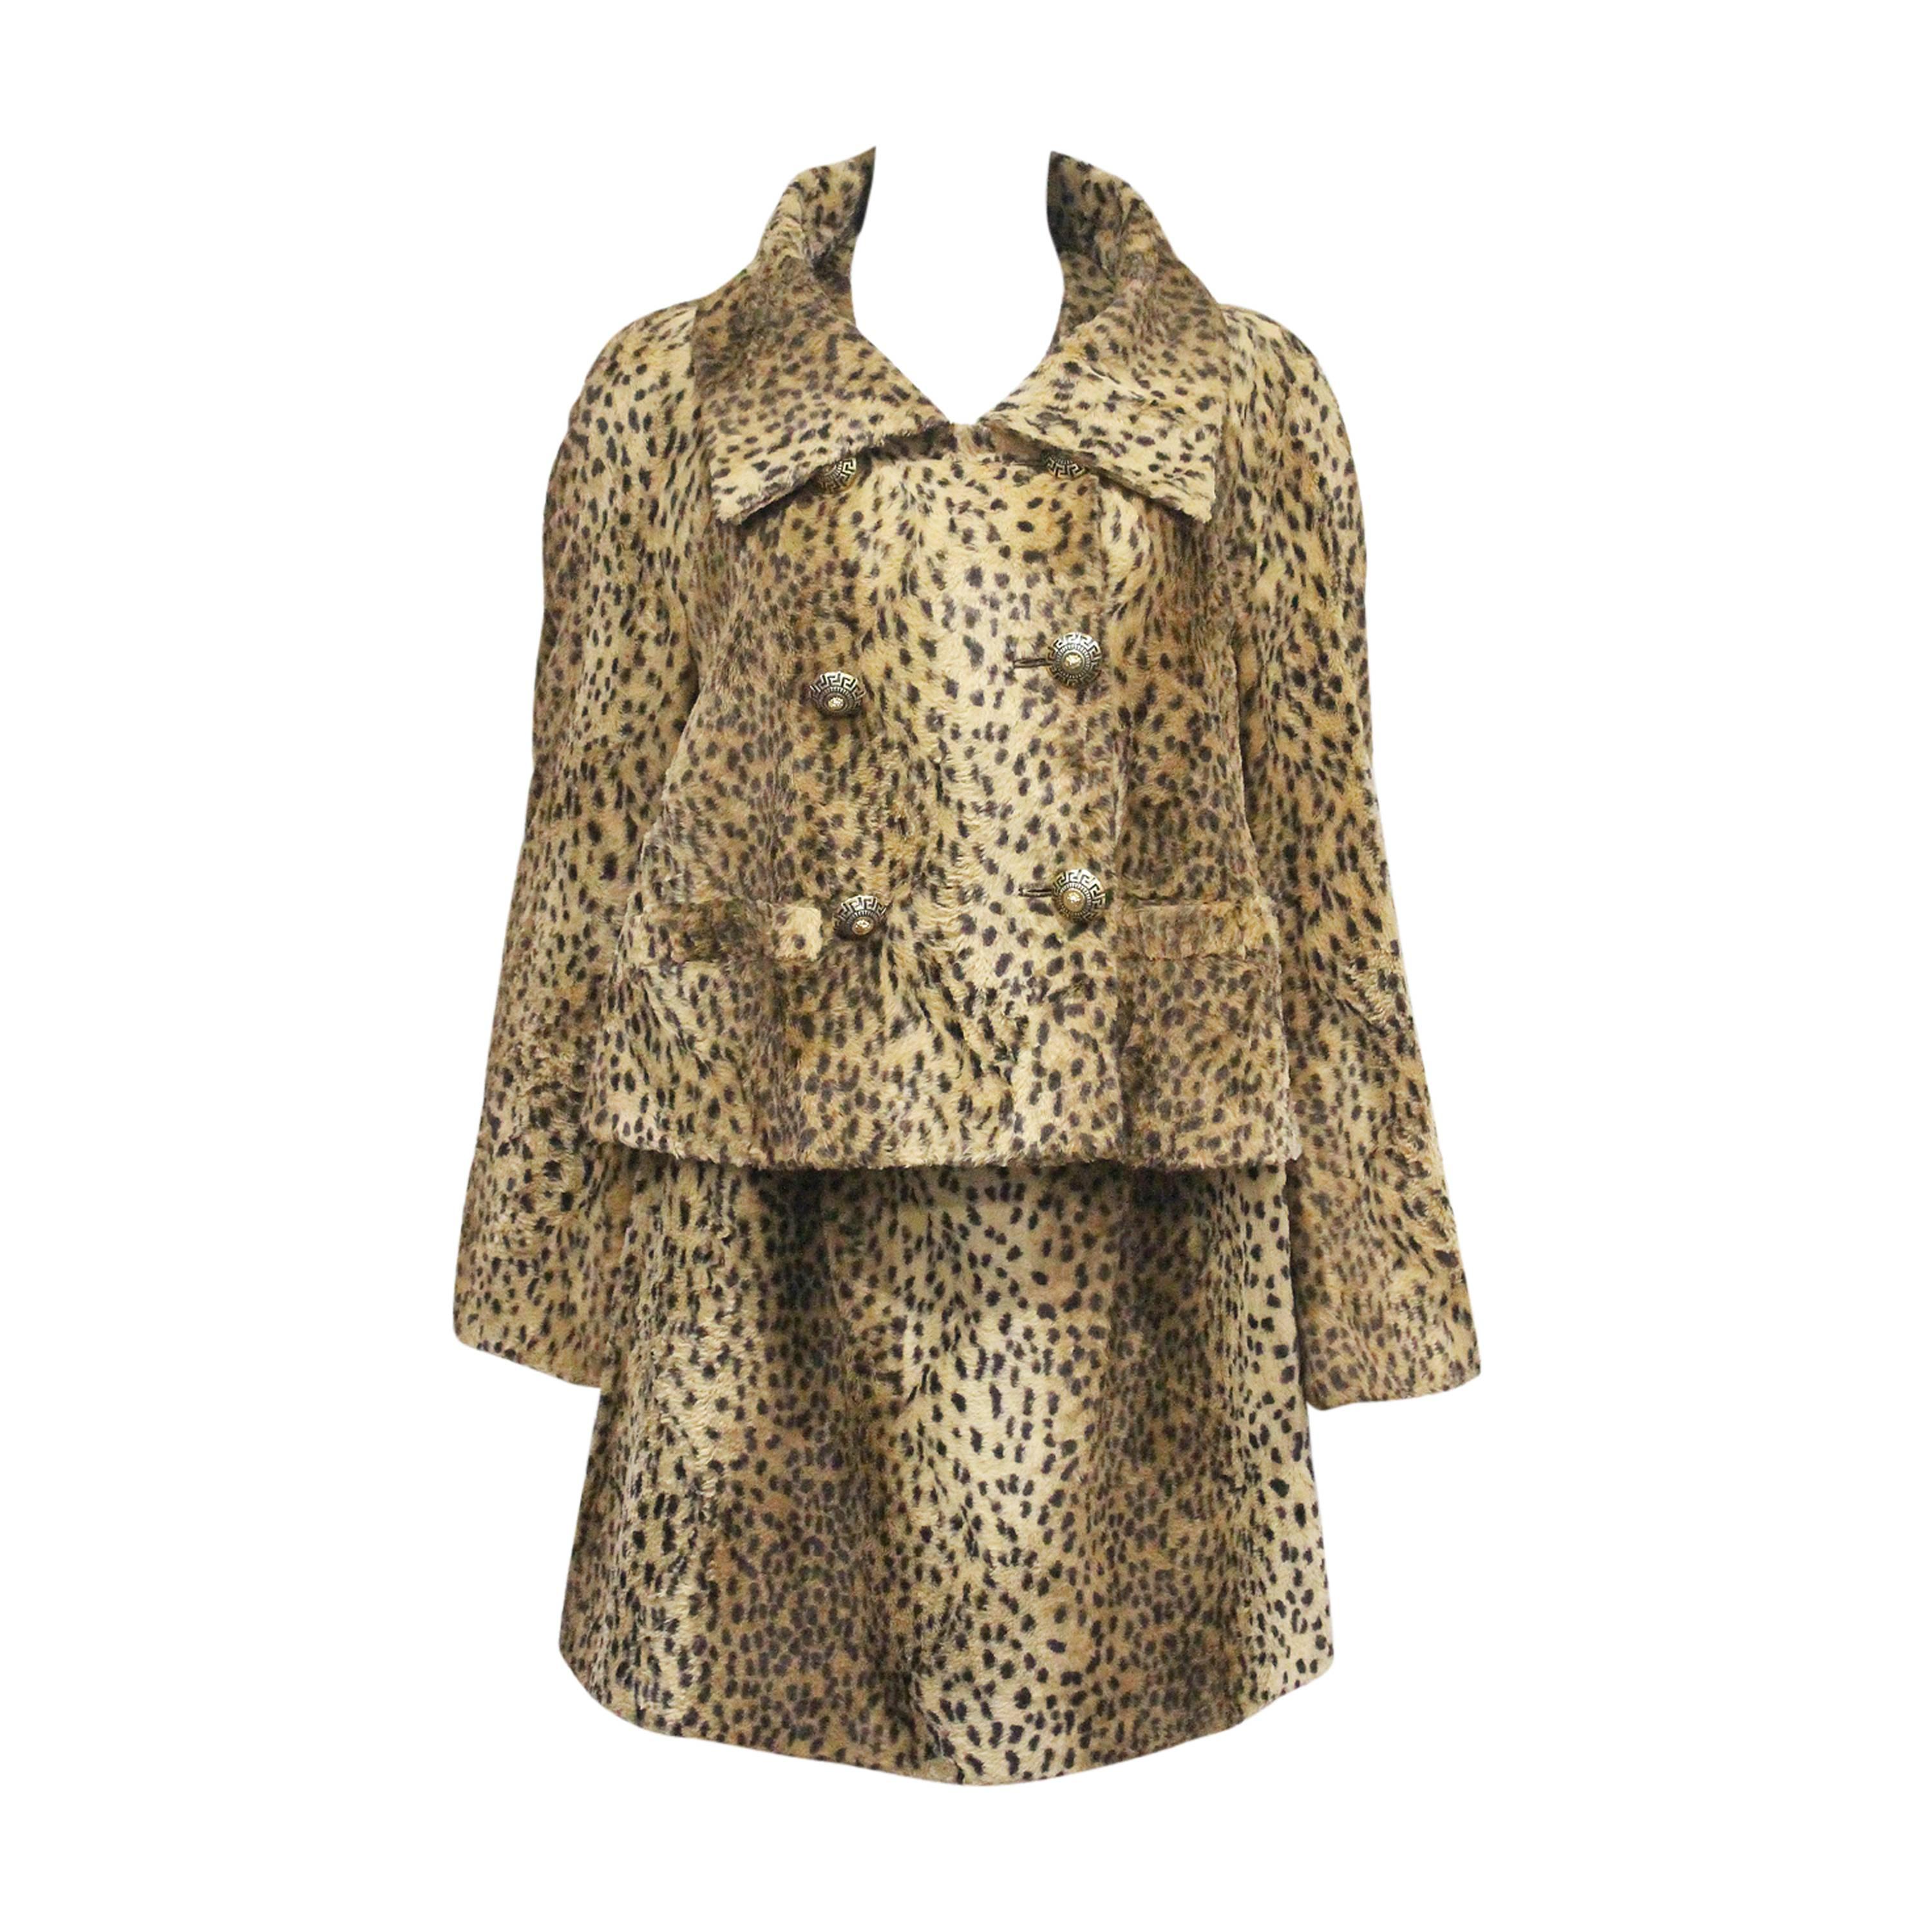 Gianni Versace: Jacke und Kleid aus Kunstpelz mit Gepardenmuster, ca. 1990er Jahre 